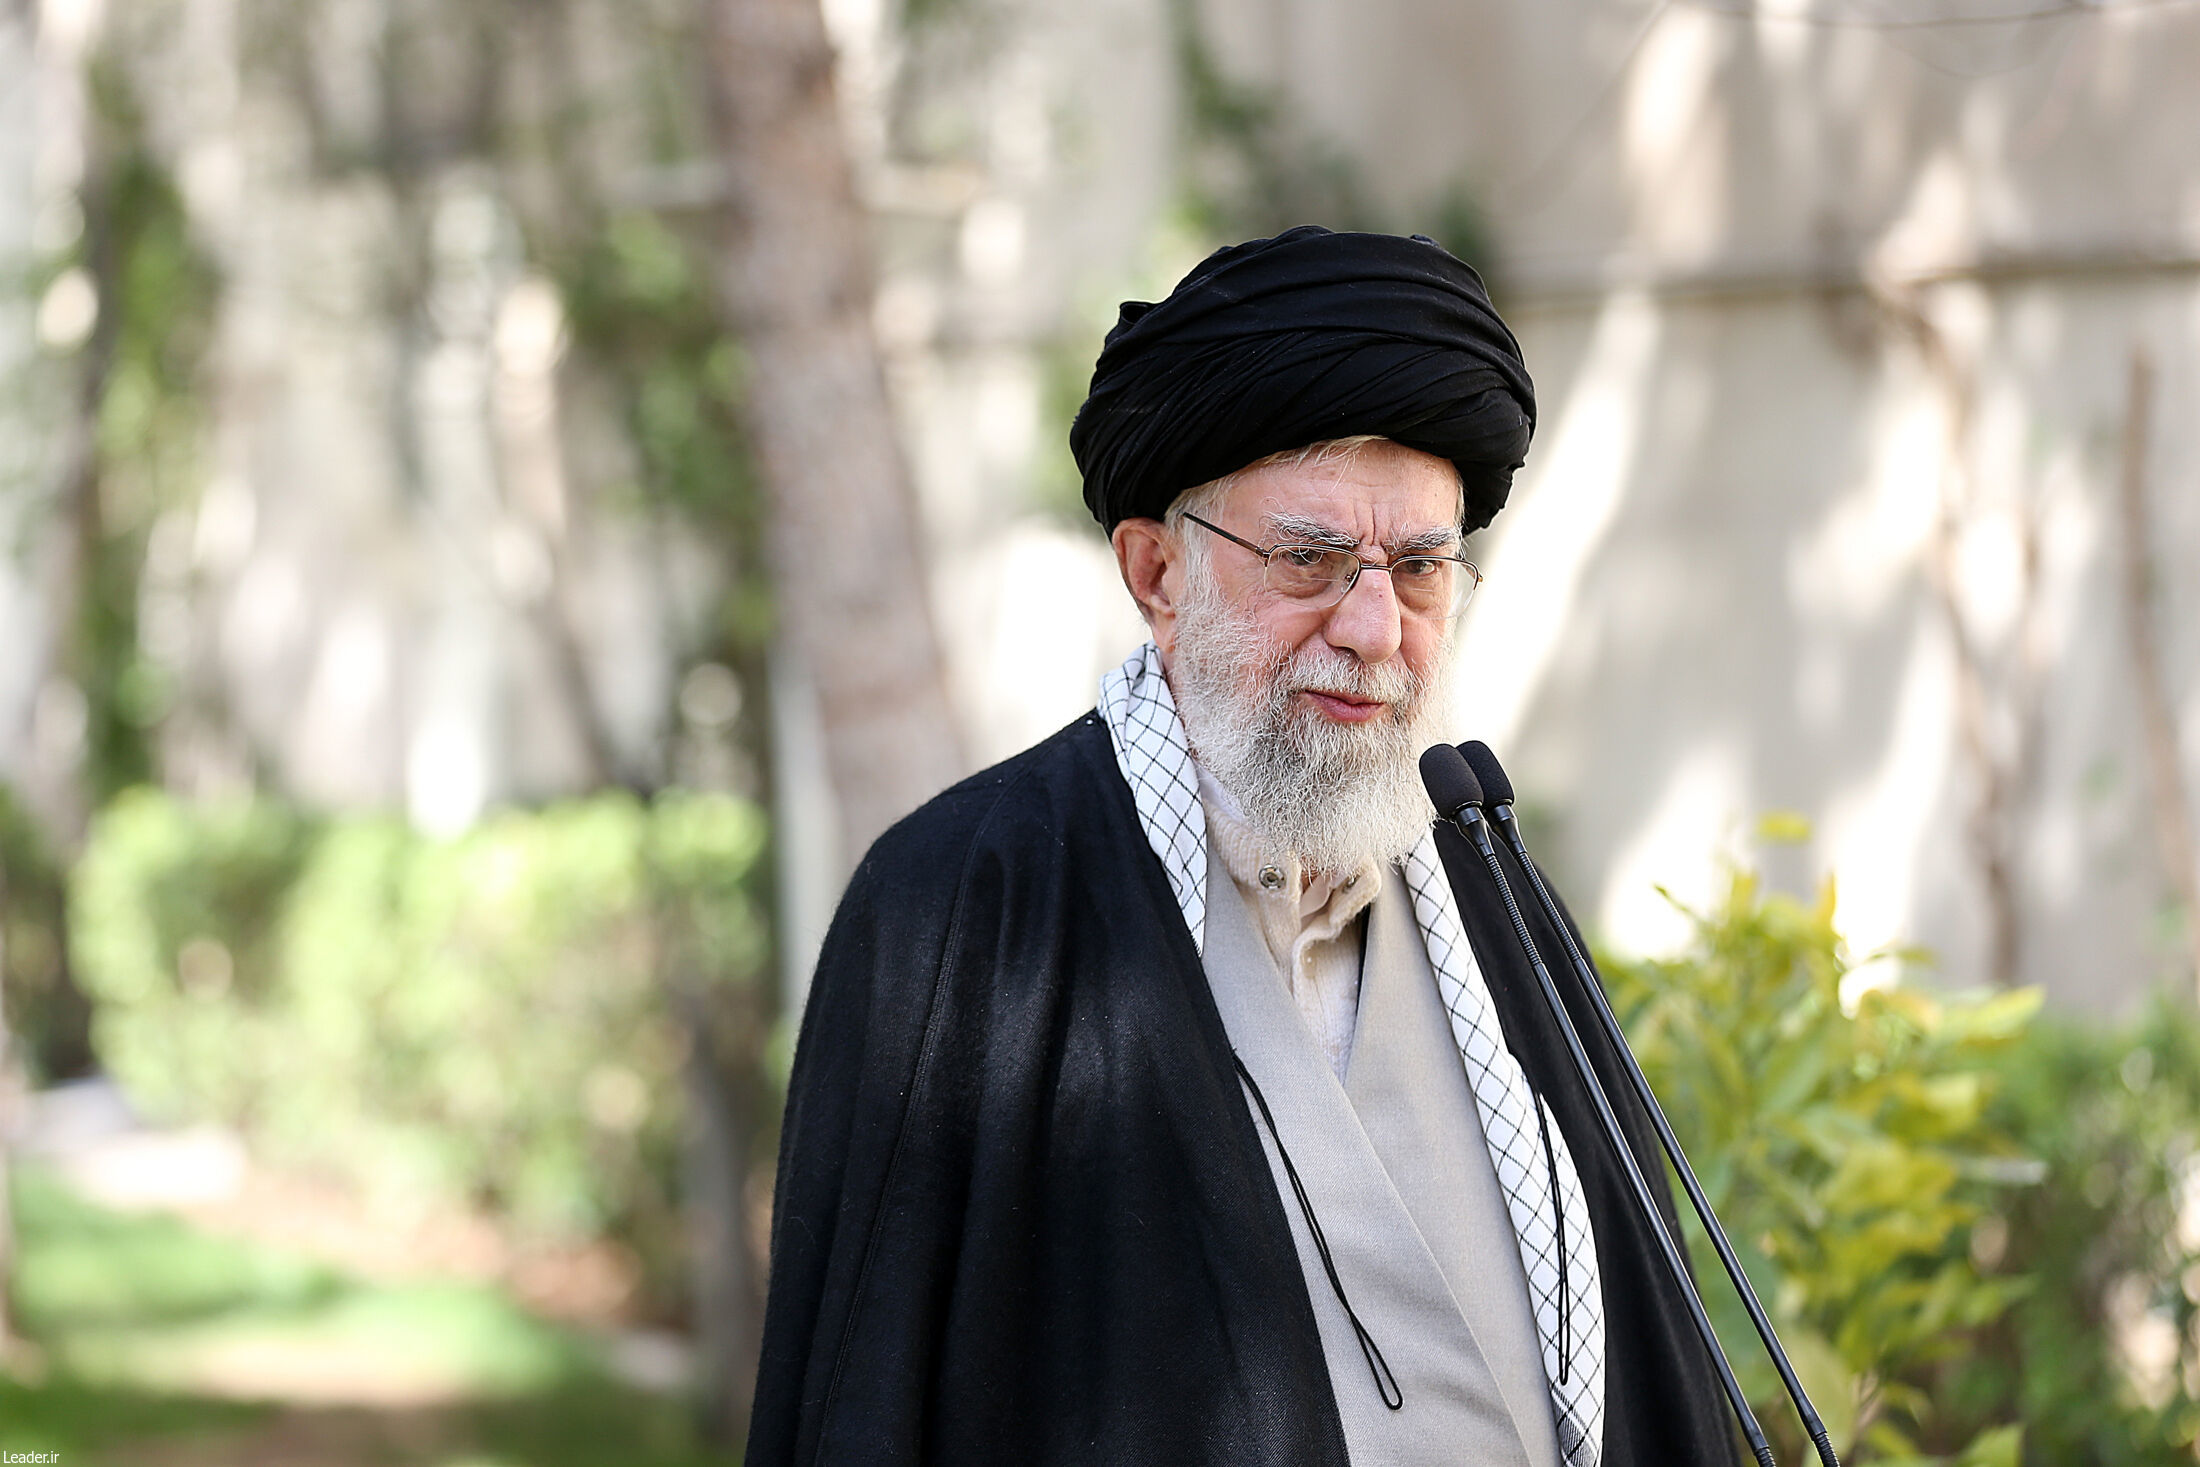 بایدها و نبایدهای اقتصاد ایران در نگاه رهبر انقلاب

